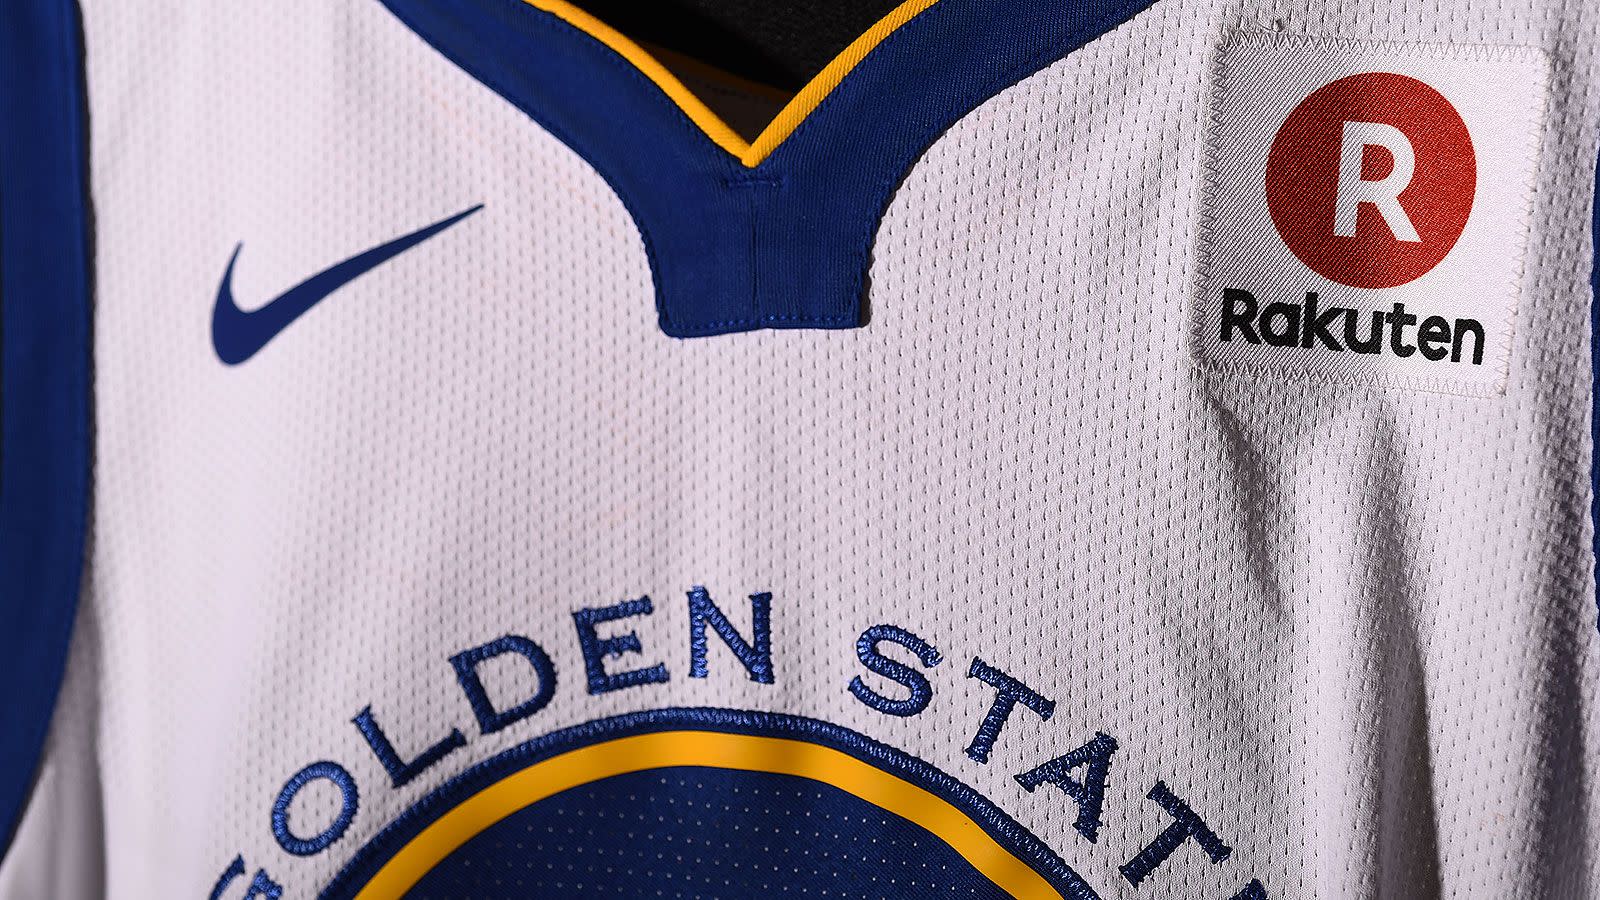 Rakuten reach NBA's richest jersey ad deal